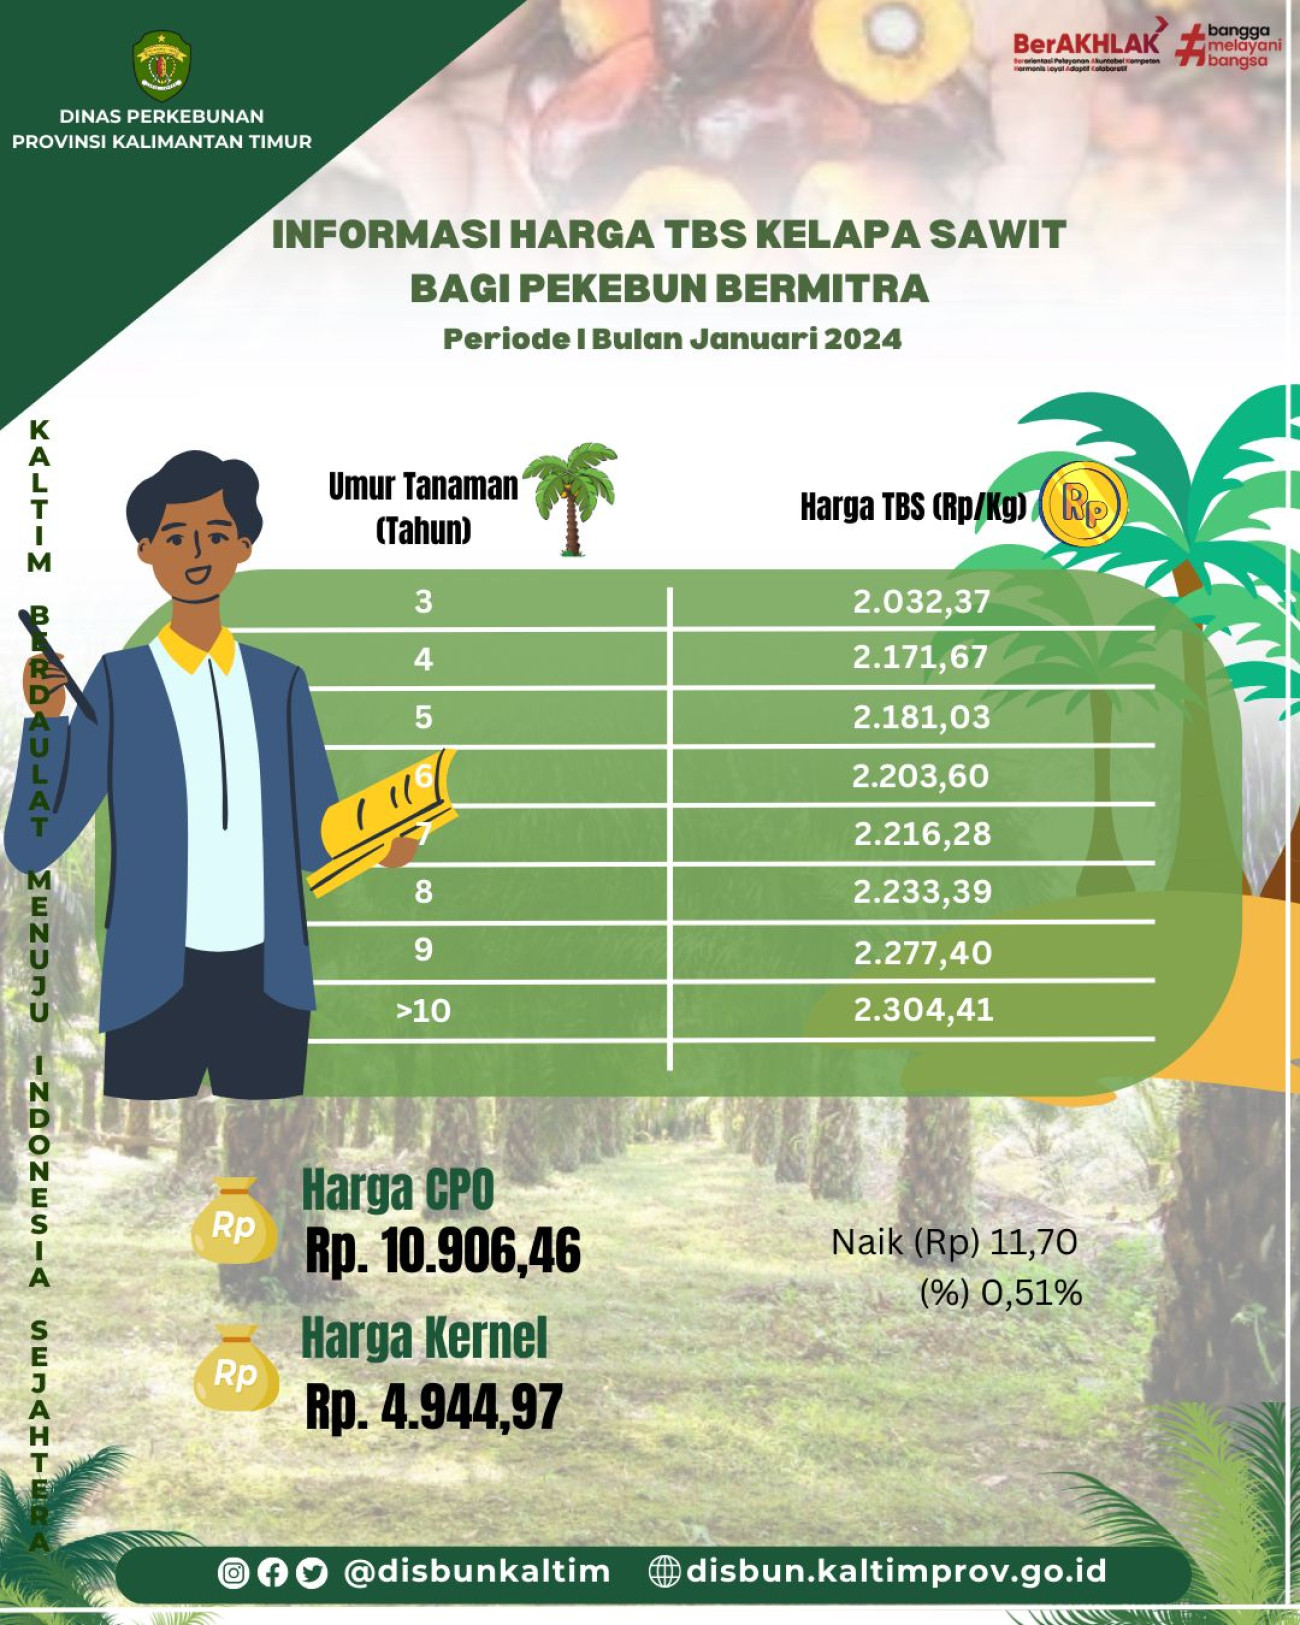 Informasi Harga TBS Kelapa Sawit bagi Pekebun Mitra Periode I Bulan Januari 2024